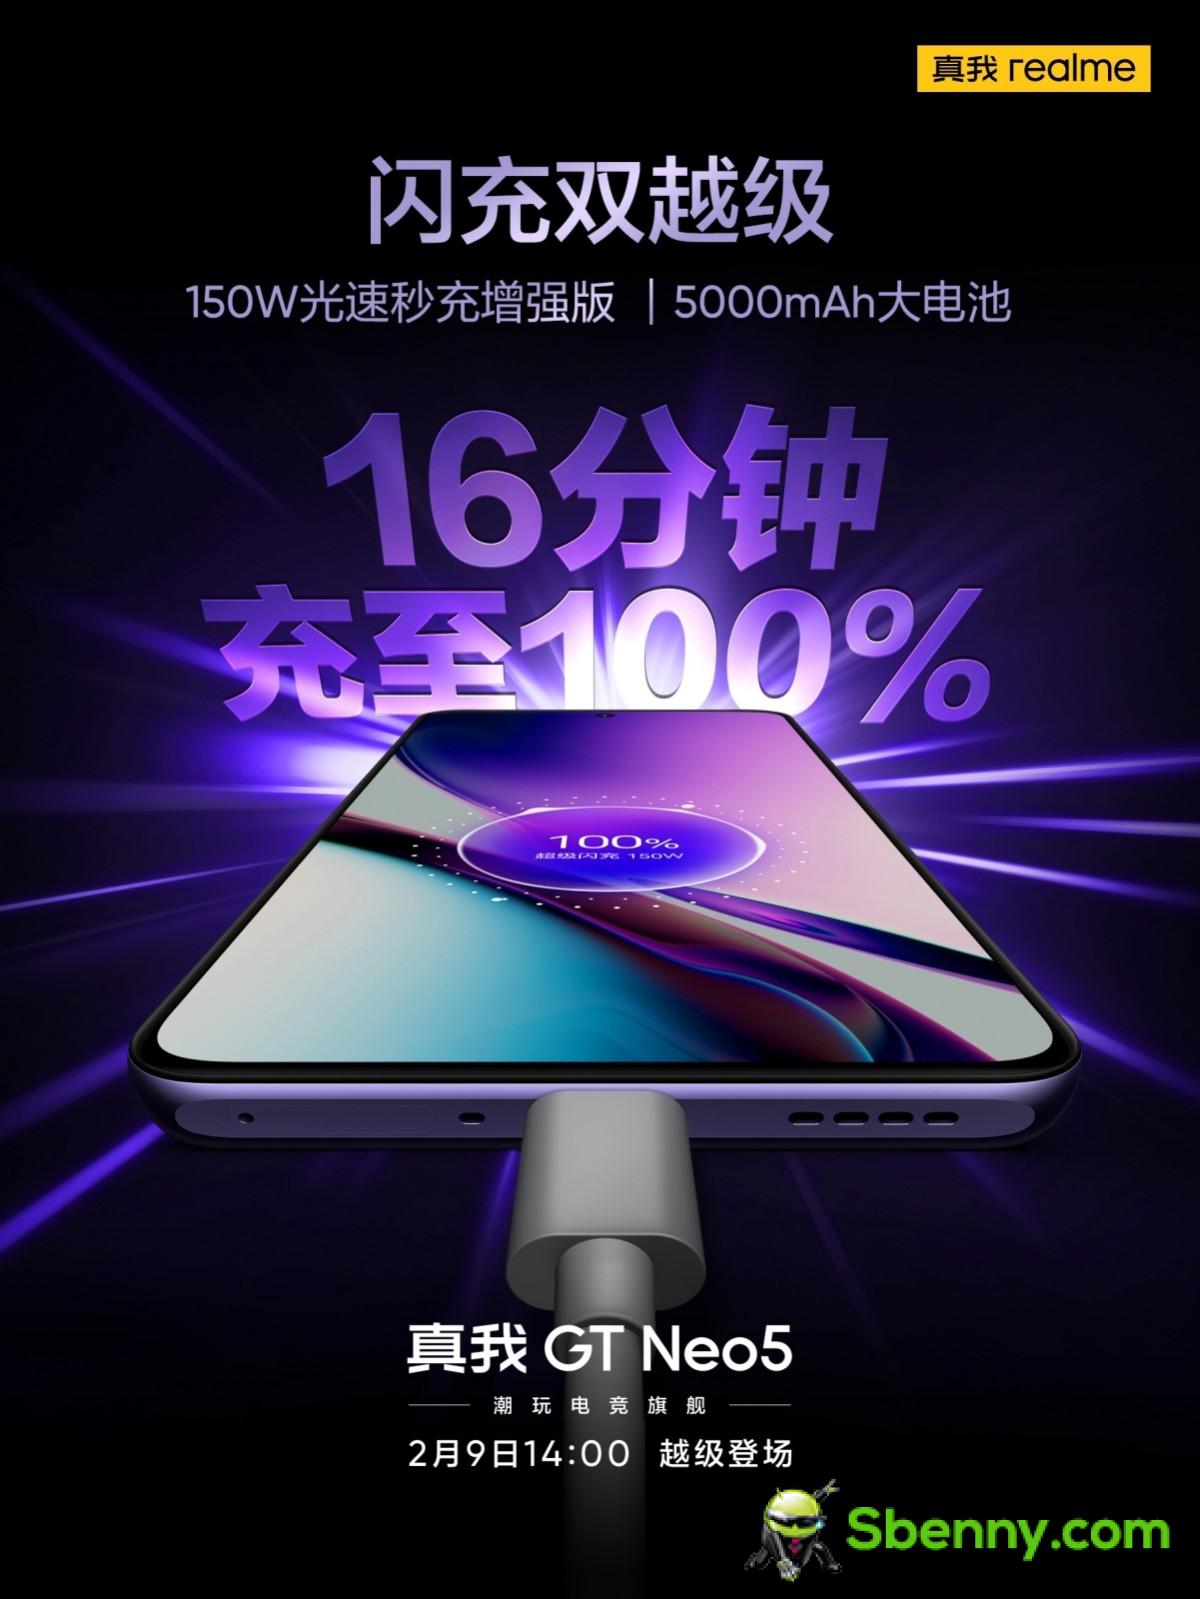 Realme подтверждает, что GT Neo 5 будет иметь вариант мощностью 150 Вт